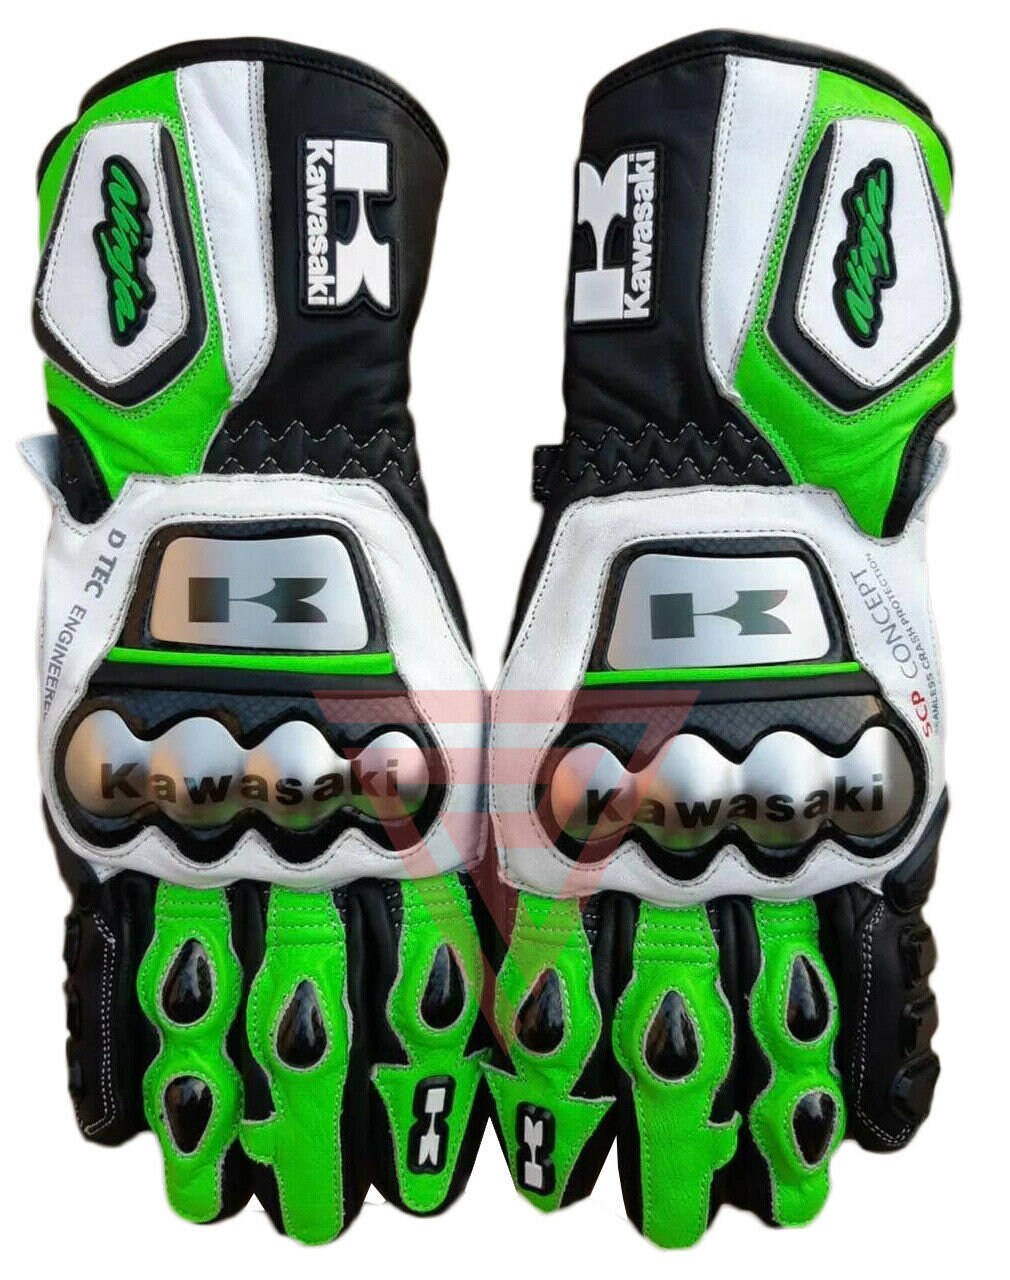 Nieuwe Kawasaki motorfiets motogp racing lederen handschoenen Accessoires Handschoenen & wanten Sporthandschoenen 